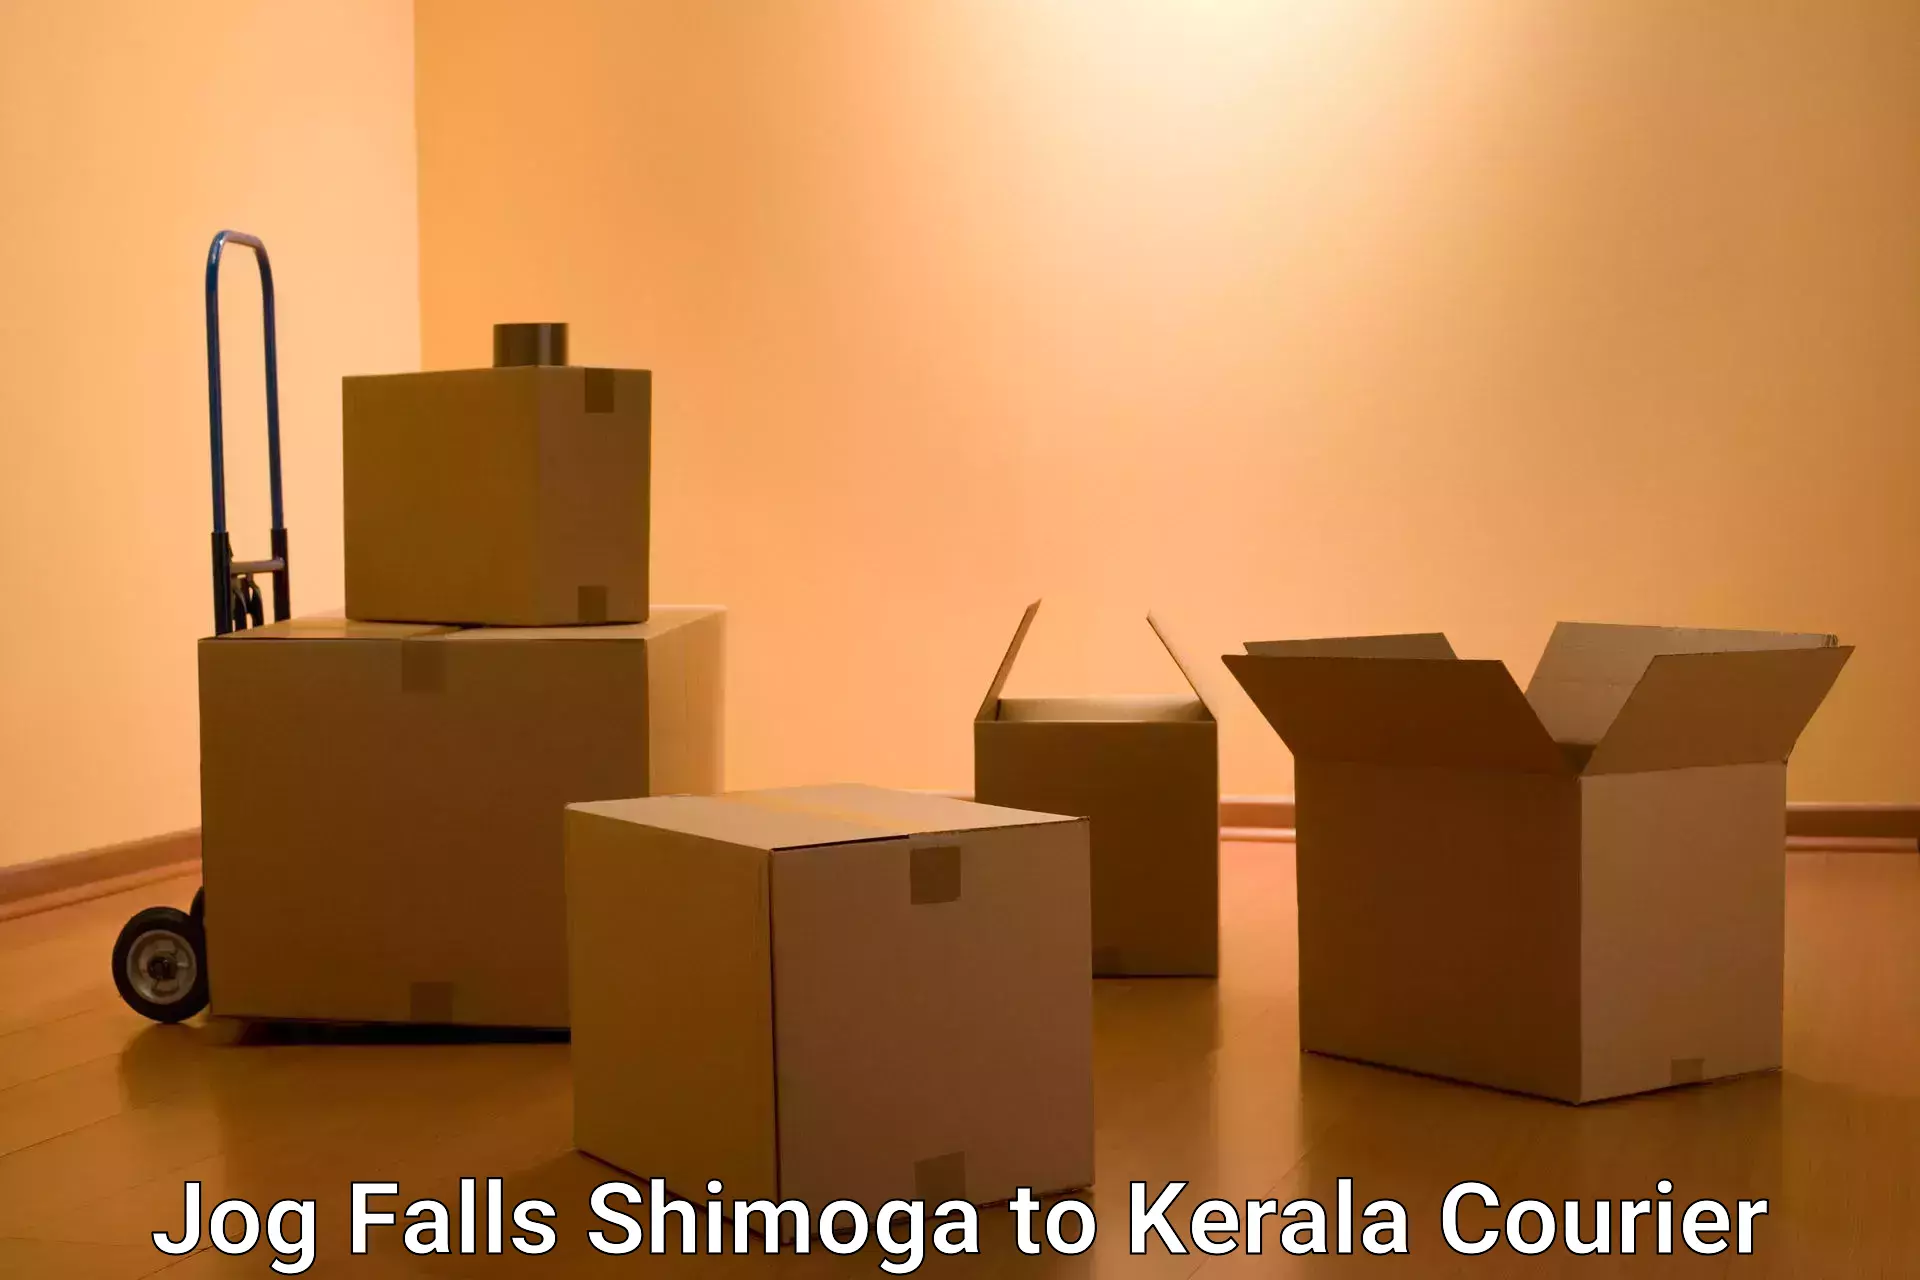 Express courier capabilities in Jog Falls Shimoga to Kerala